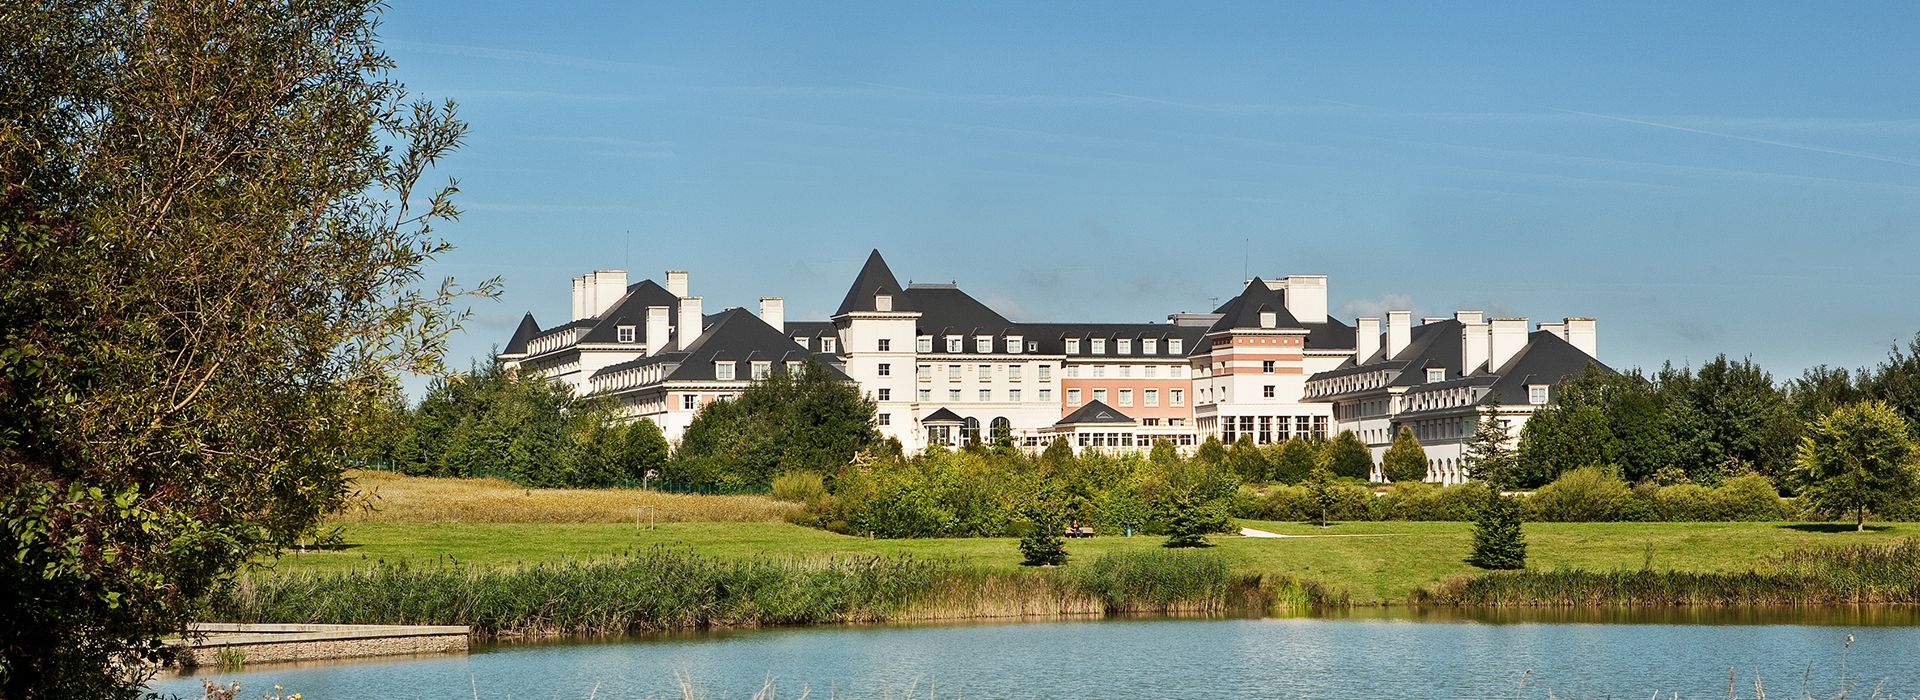 Vienna House Dream Castle Paris- Marne-la-Vallee, France Hotels